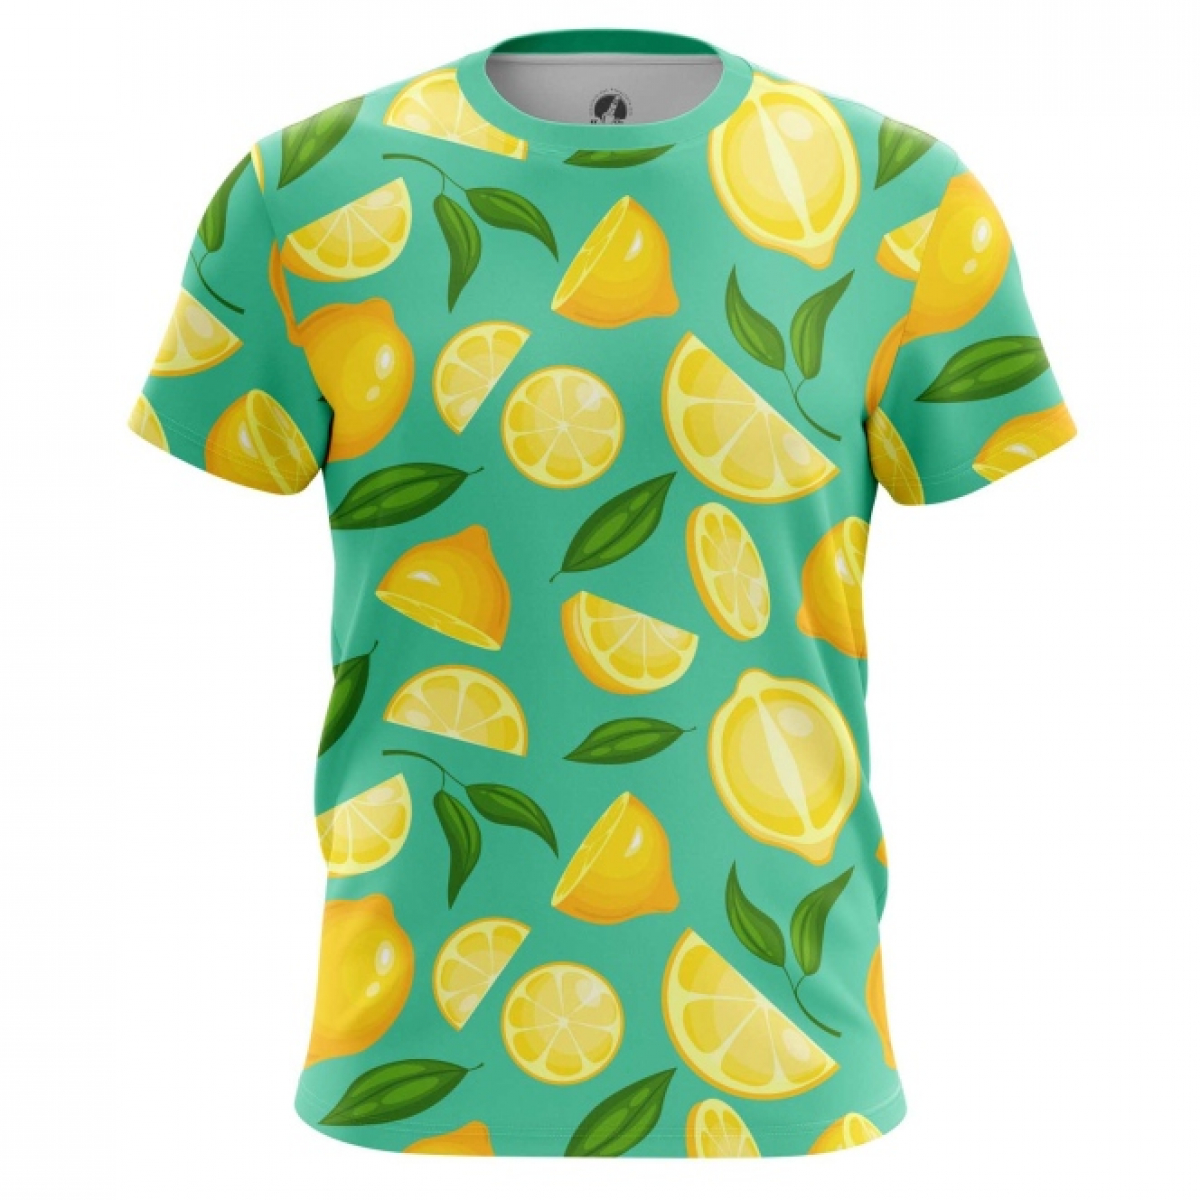 Buy Men's T-shirt Lemons Print Fruit Top - IdolStore